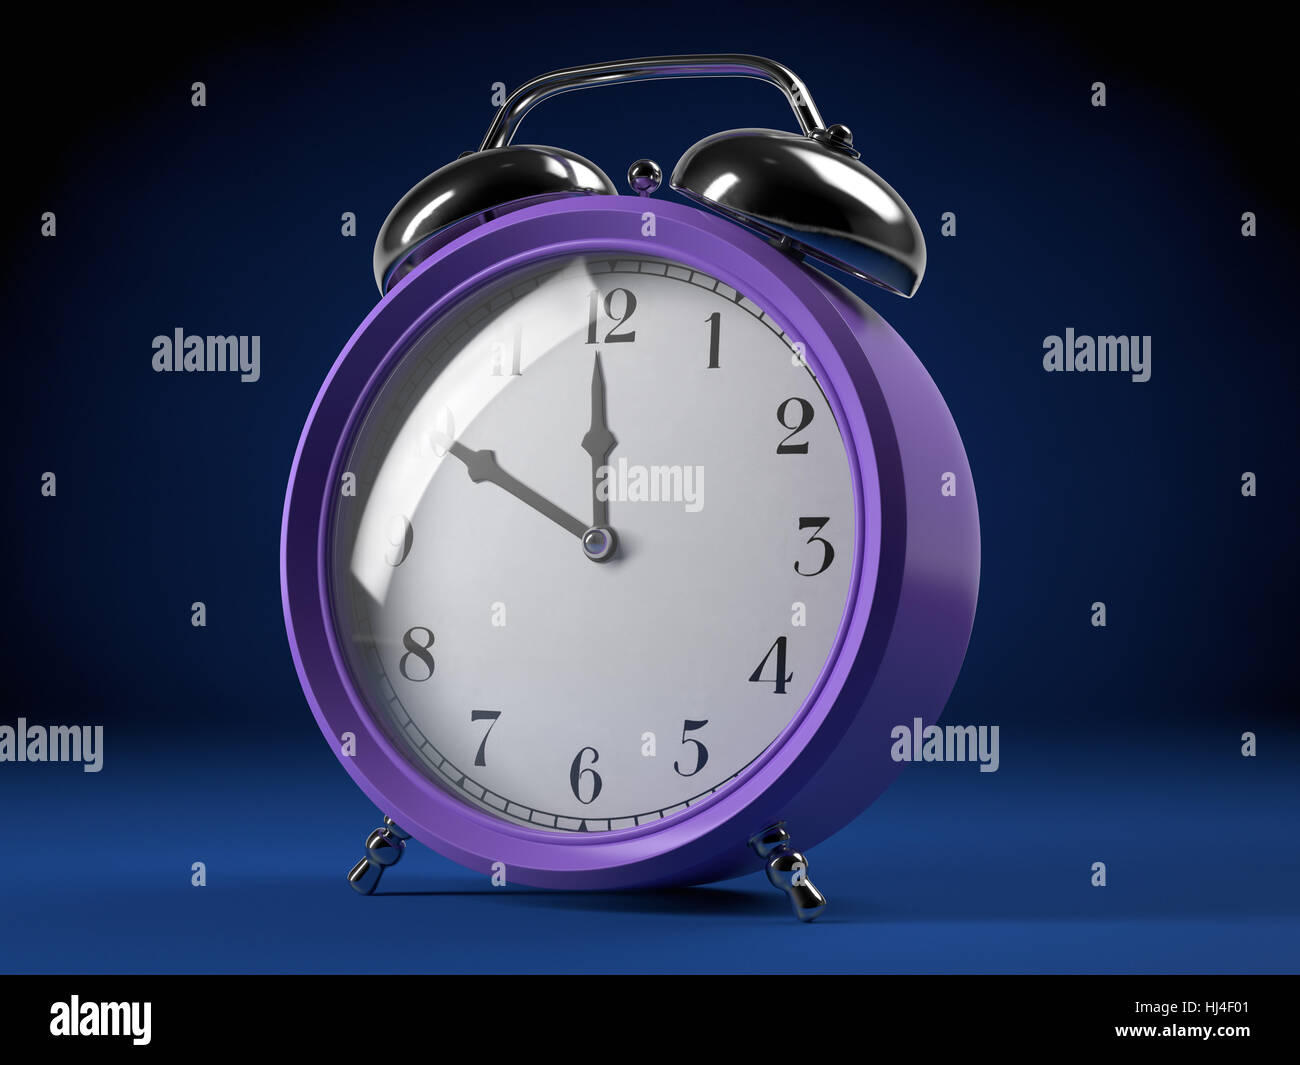 Reloj, Fecha, hora, indicación de tiempo, mañana, mañana, reloj con alarma, alarma, Foto de stock